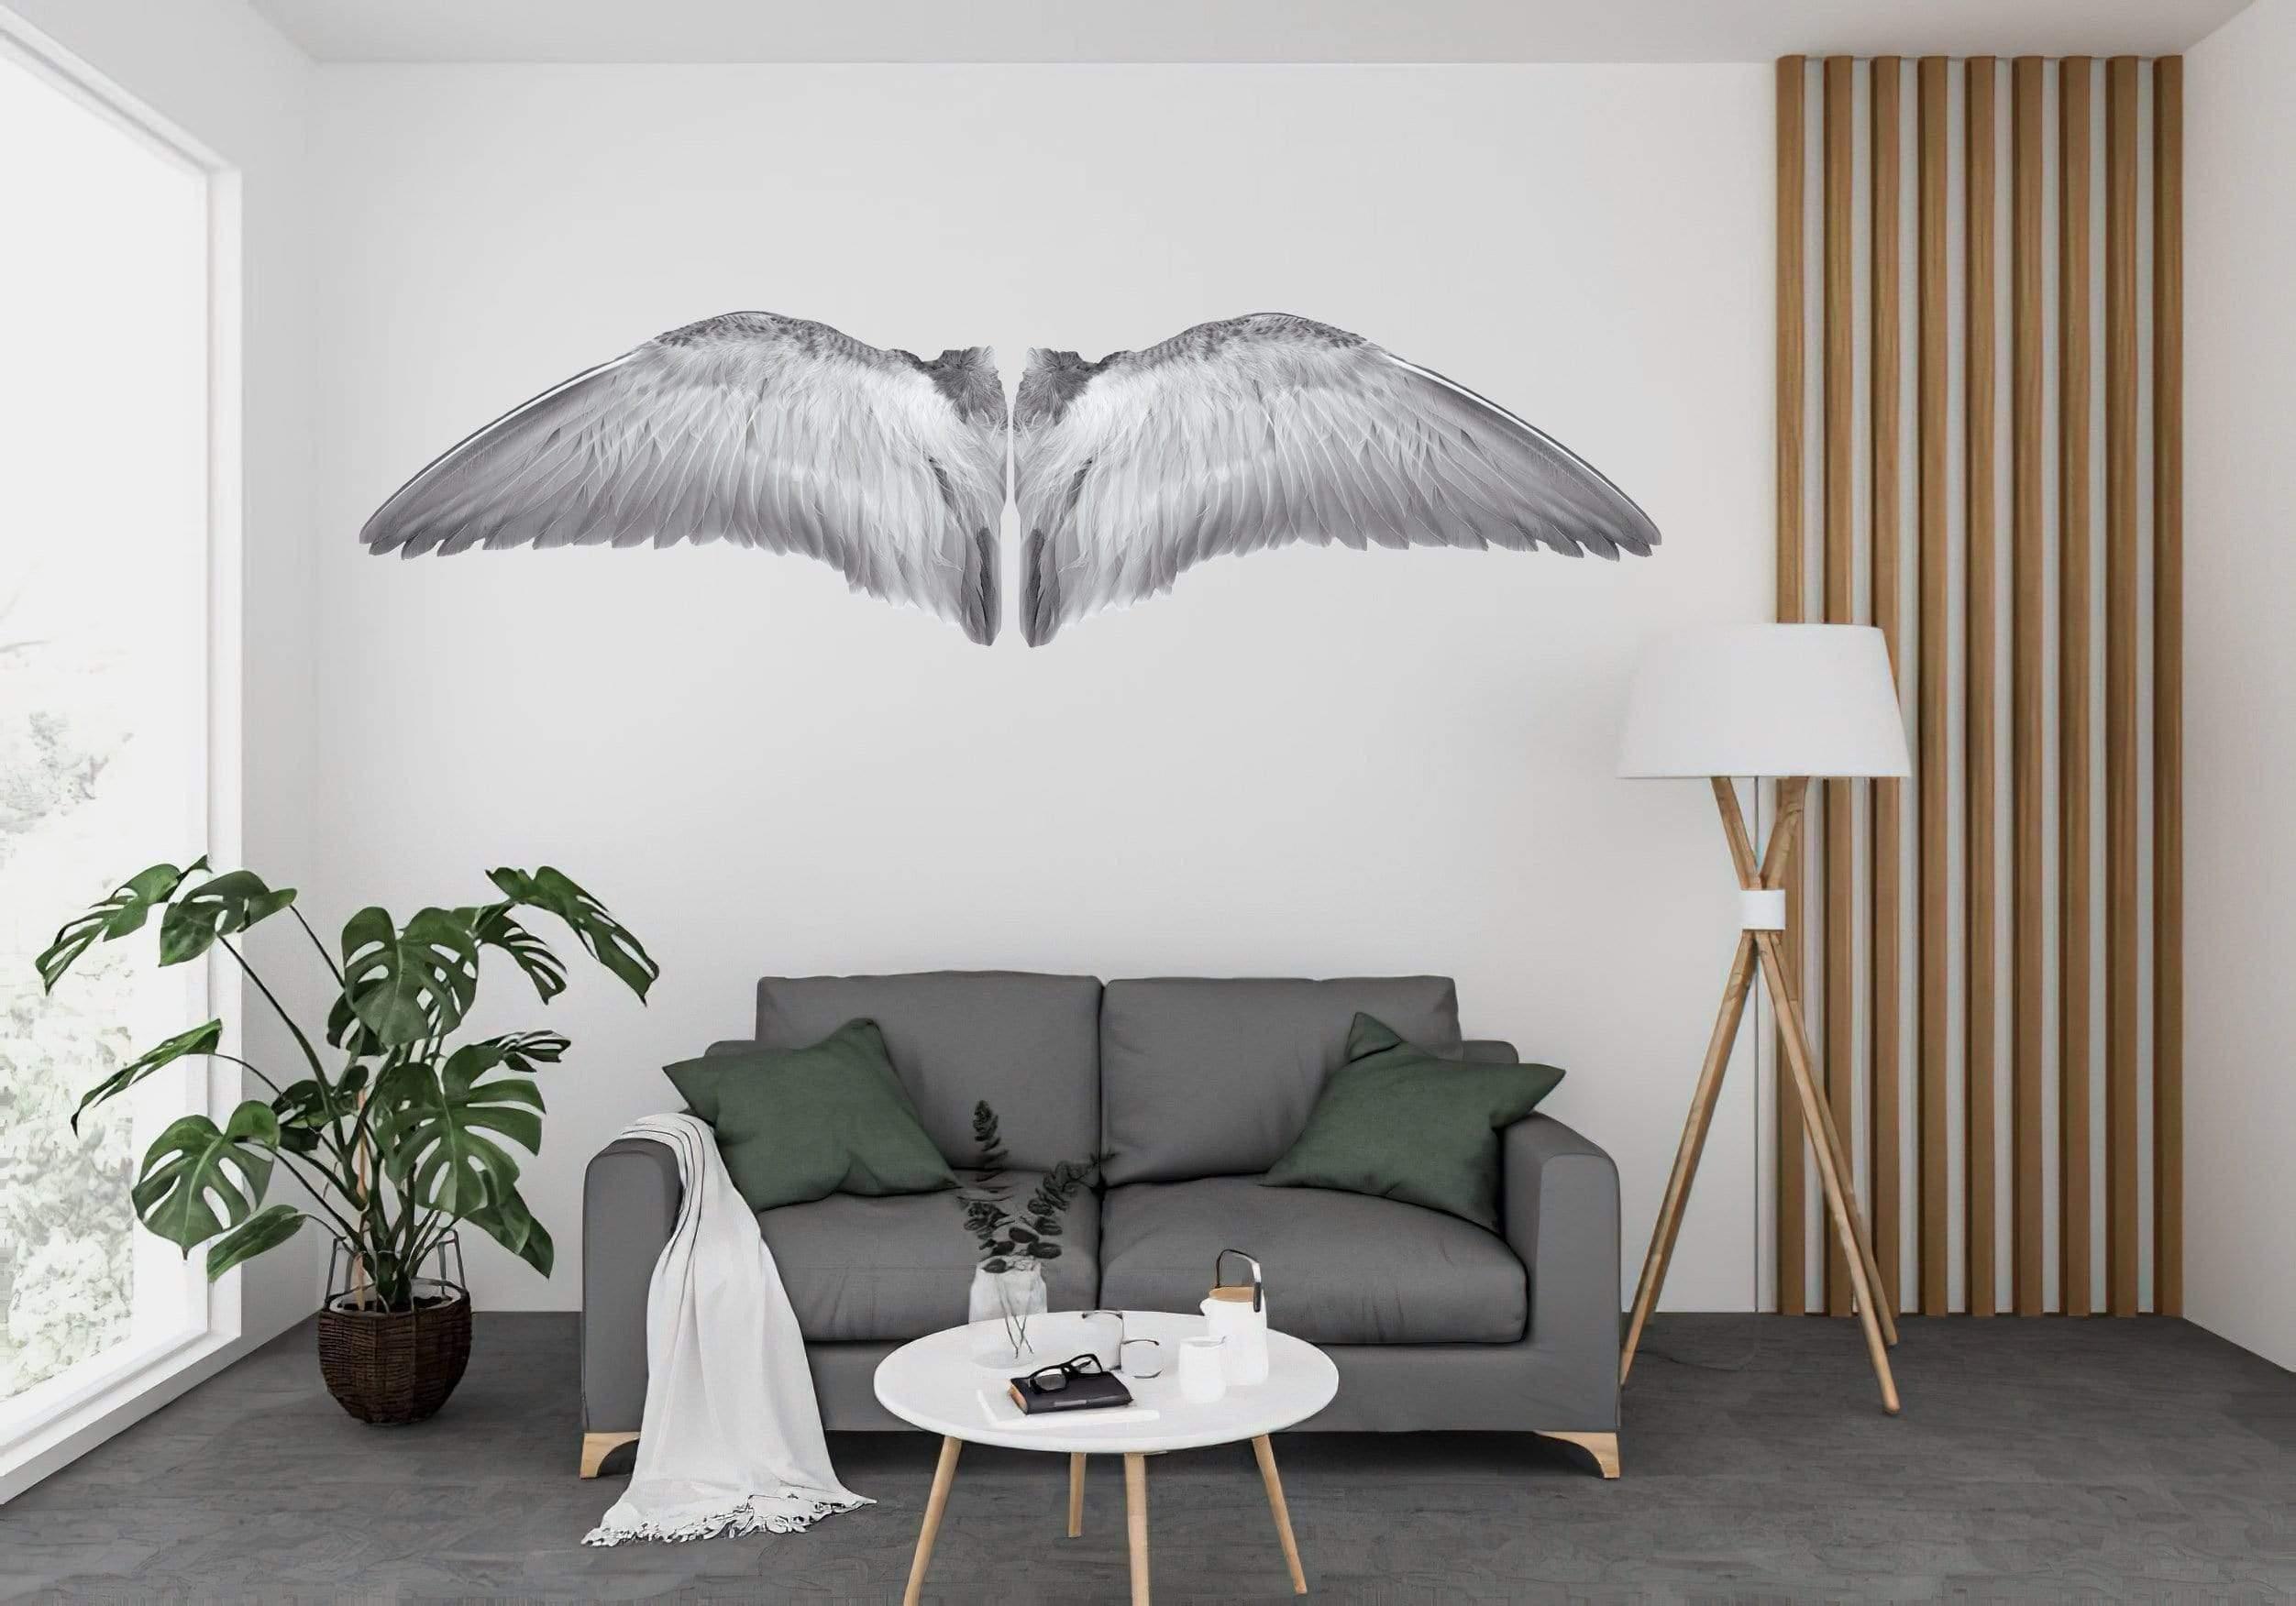 White Gray Wings Die Cut to Wings, Wall Decals, Angel Wings, Bird Wings